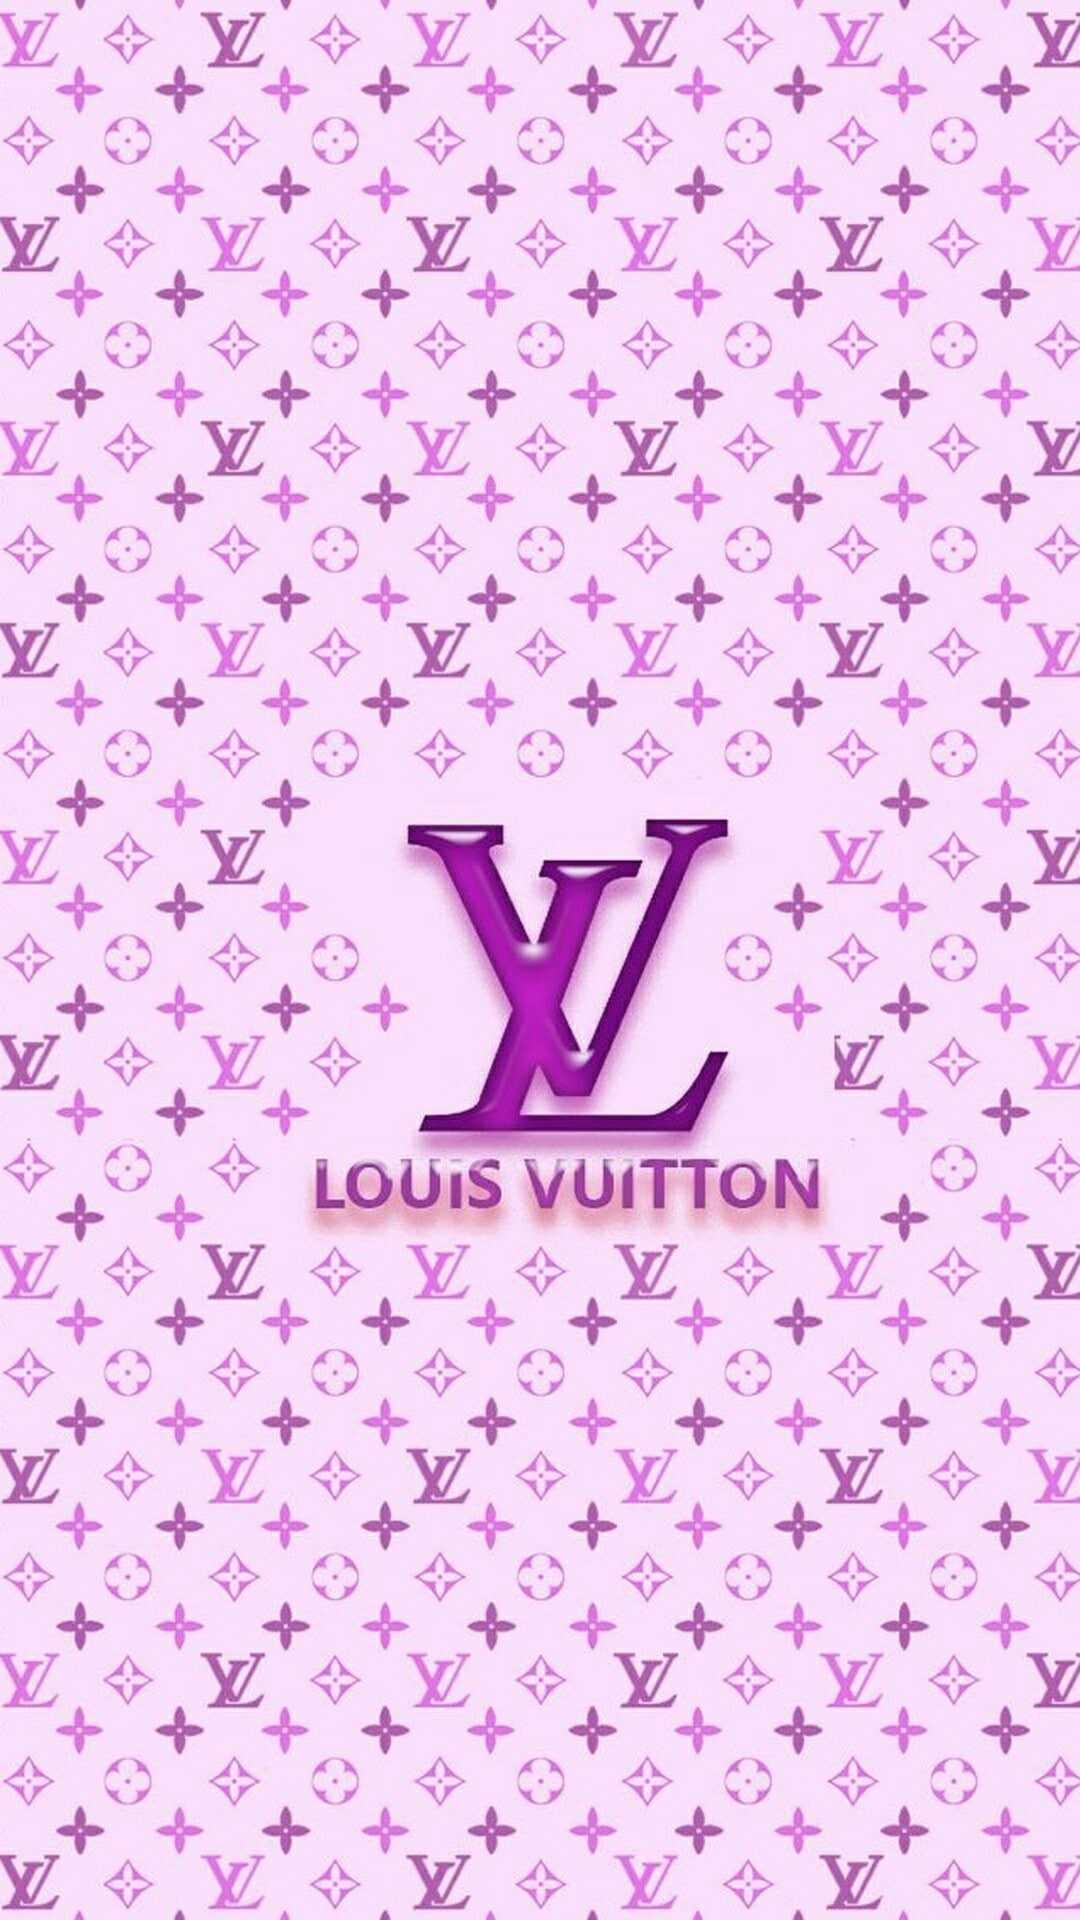 Logo Gucci Supreme Louis Vuitton - supreme gucci louis vuitton HD phone  wallpaper